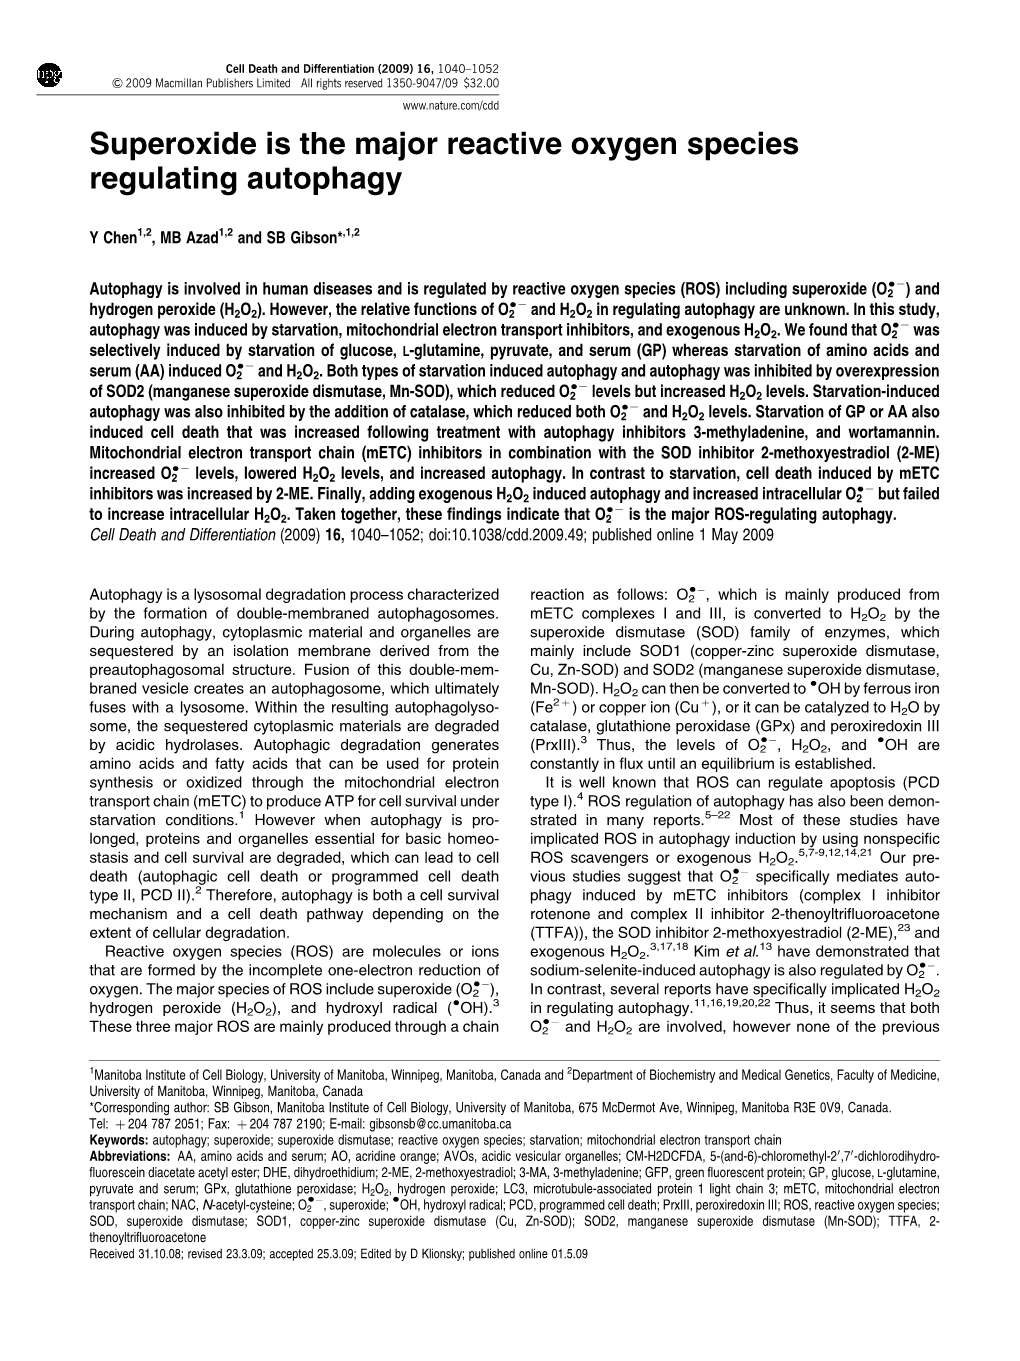 Superoxide Is the Major Reactive Oxygen Species Regulating Autophagy